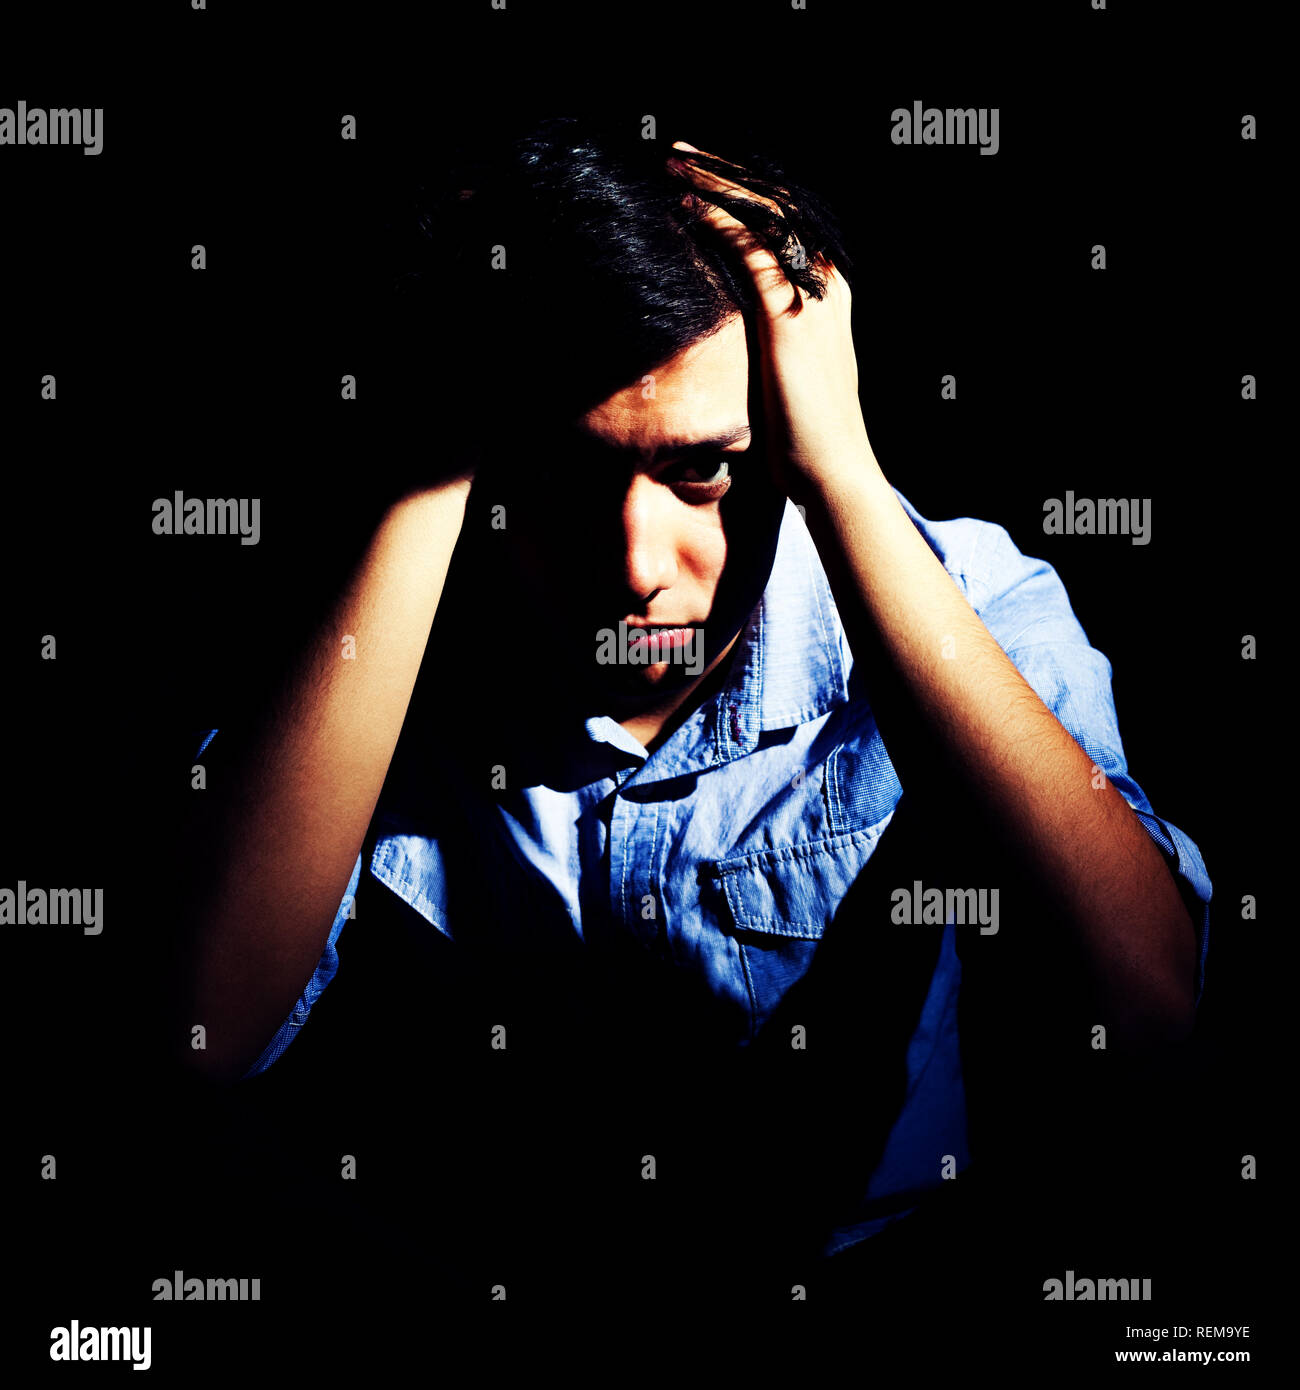 Ritratto di un uomo depresso Foto Stock